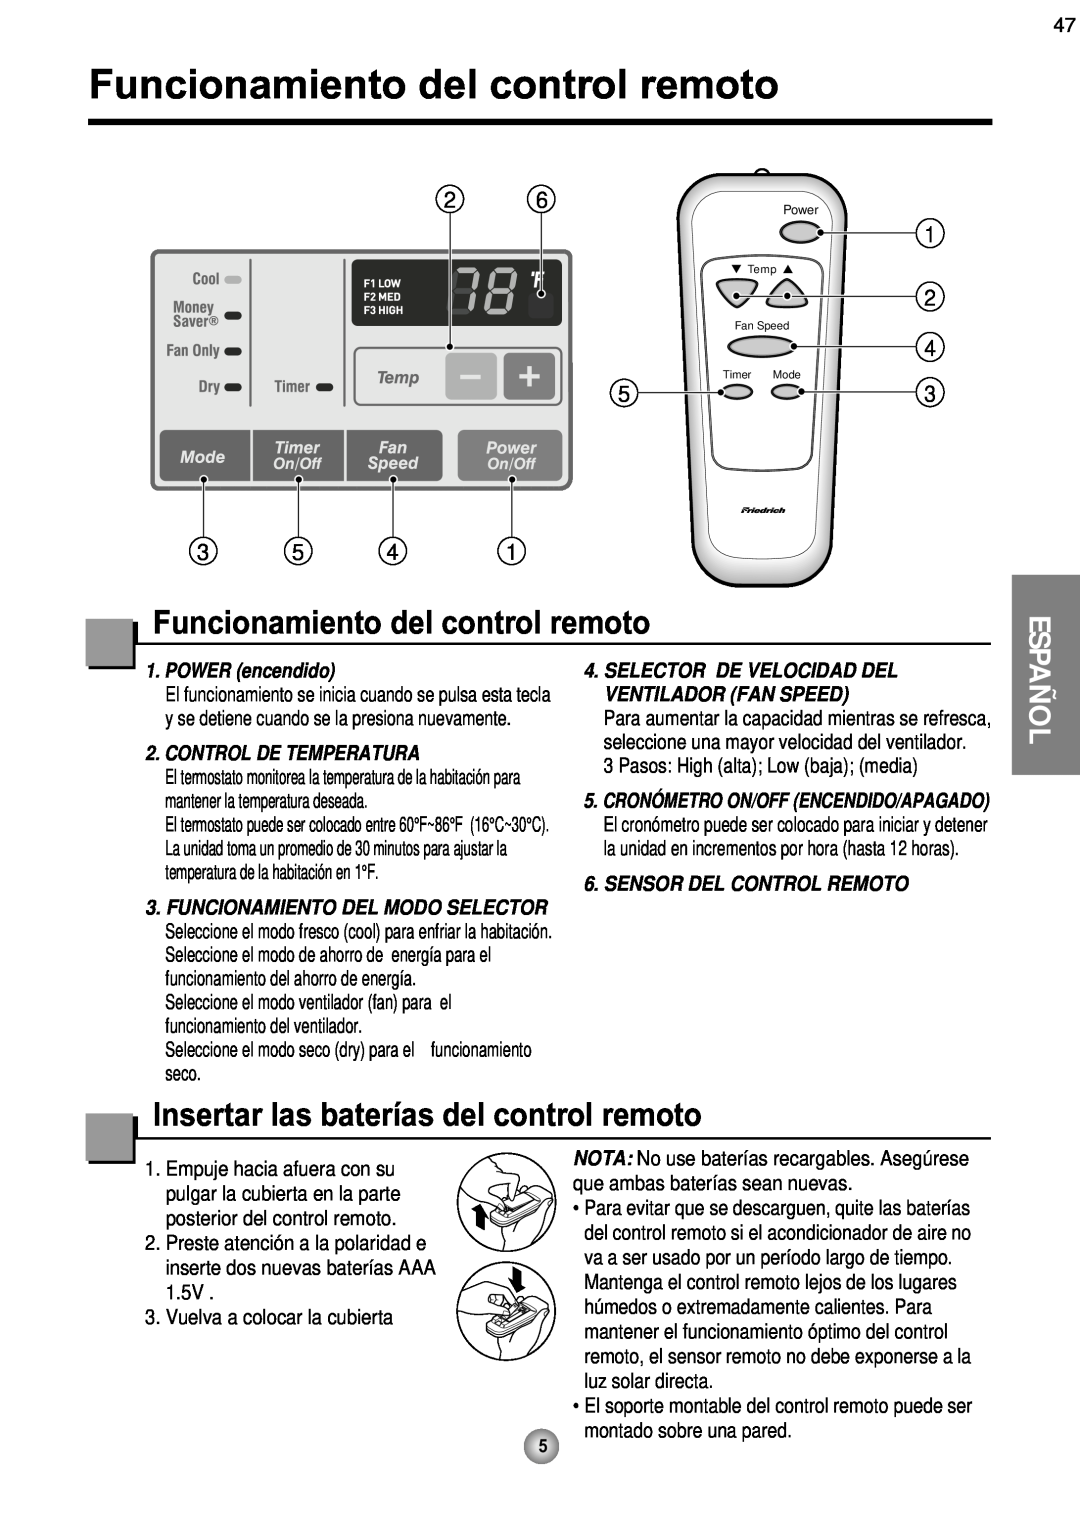 Friedrich CP08 Funcionamiento del control remoto, 1 2, POWER encendido, Control De Temperatura, Sensor Del Control Remoto 